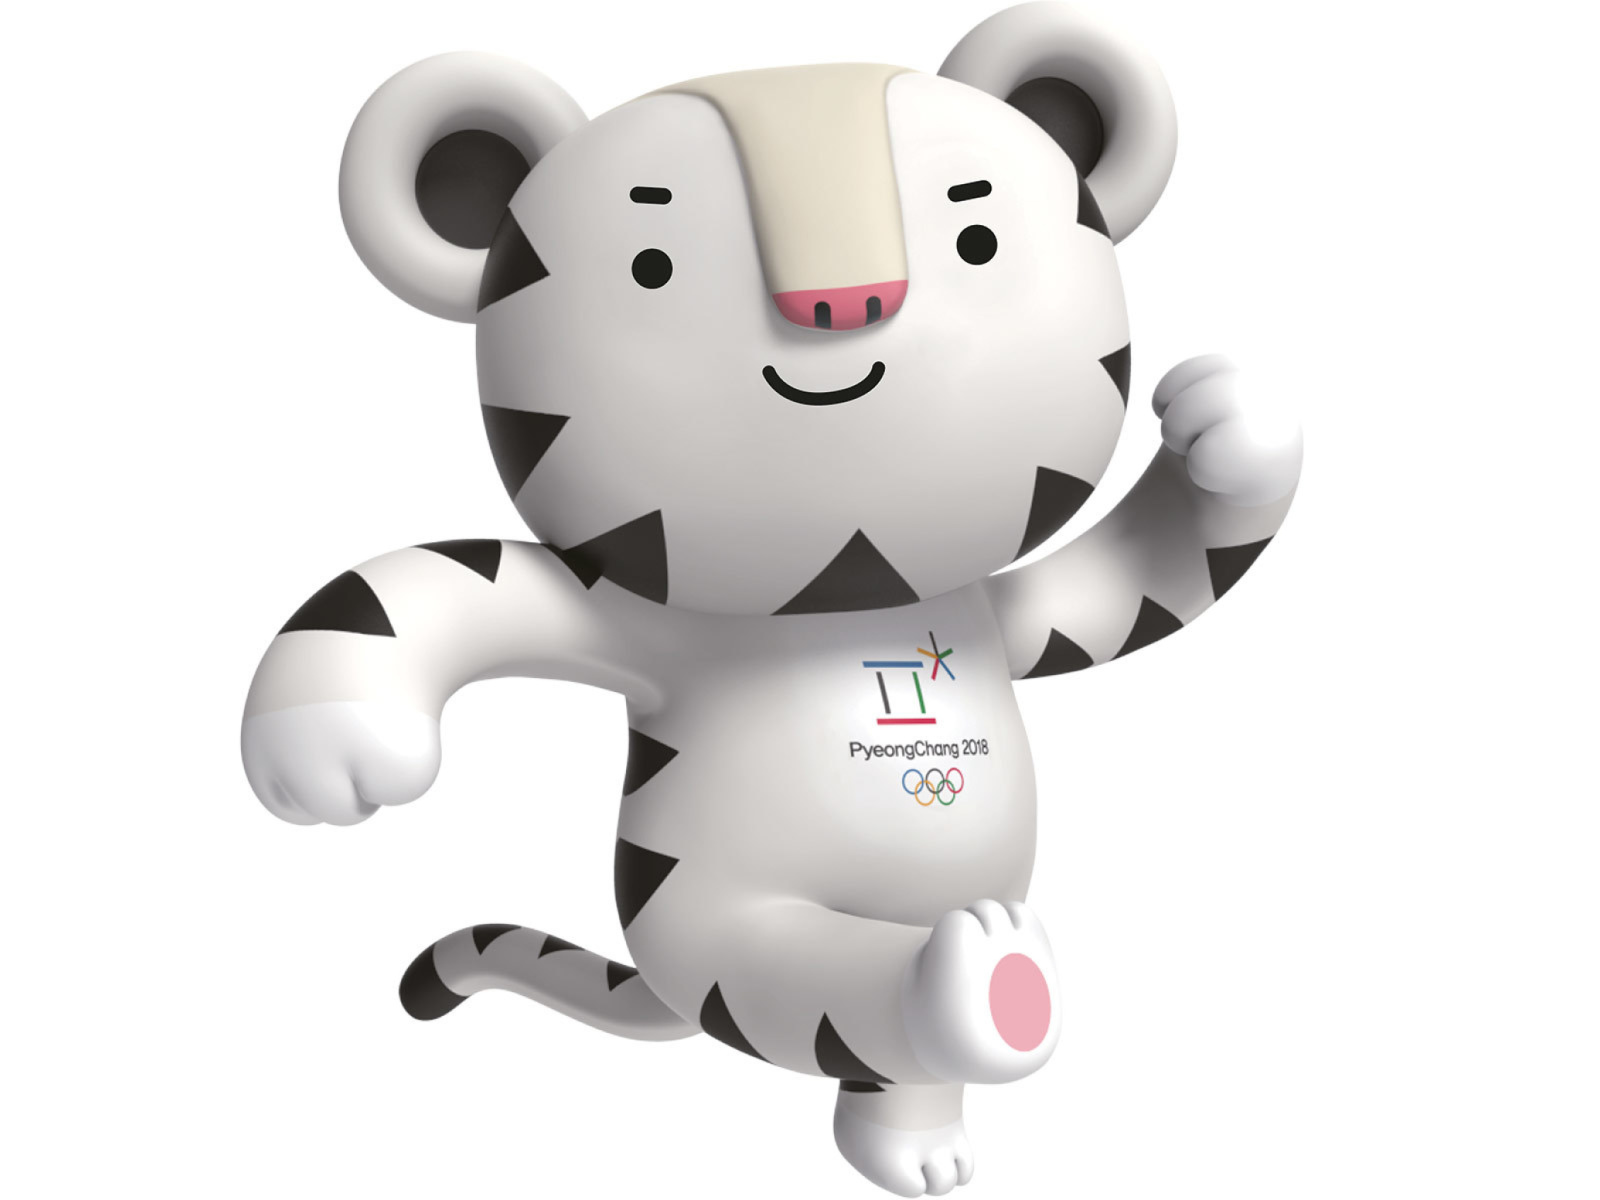 Sfondi 2018 Winter Olympics Pyeongchang Mascot 1600x1200